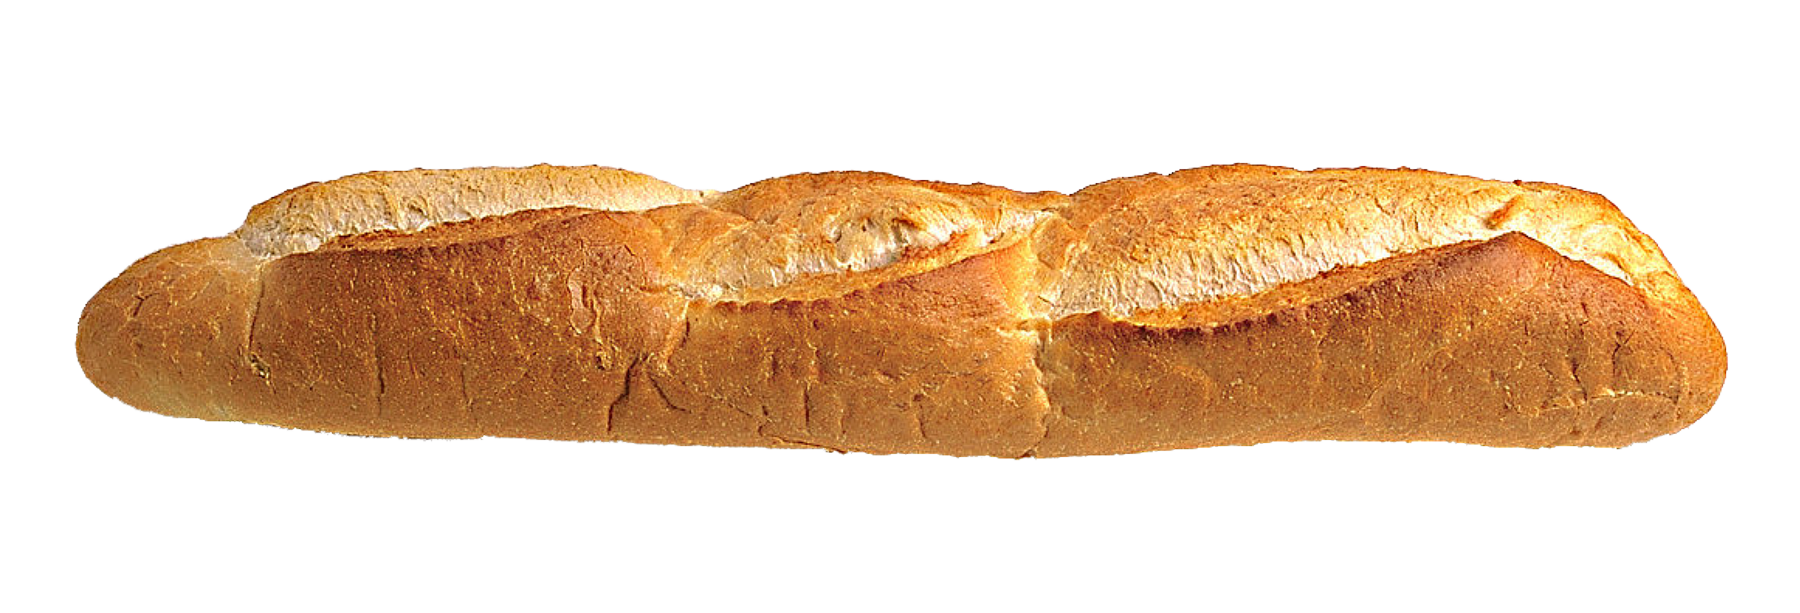 long loaf bread png transparent image pngpix #18114